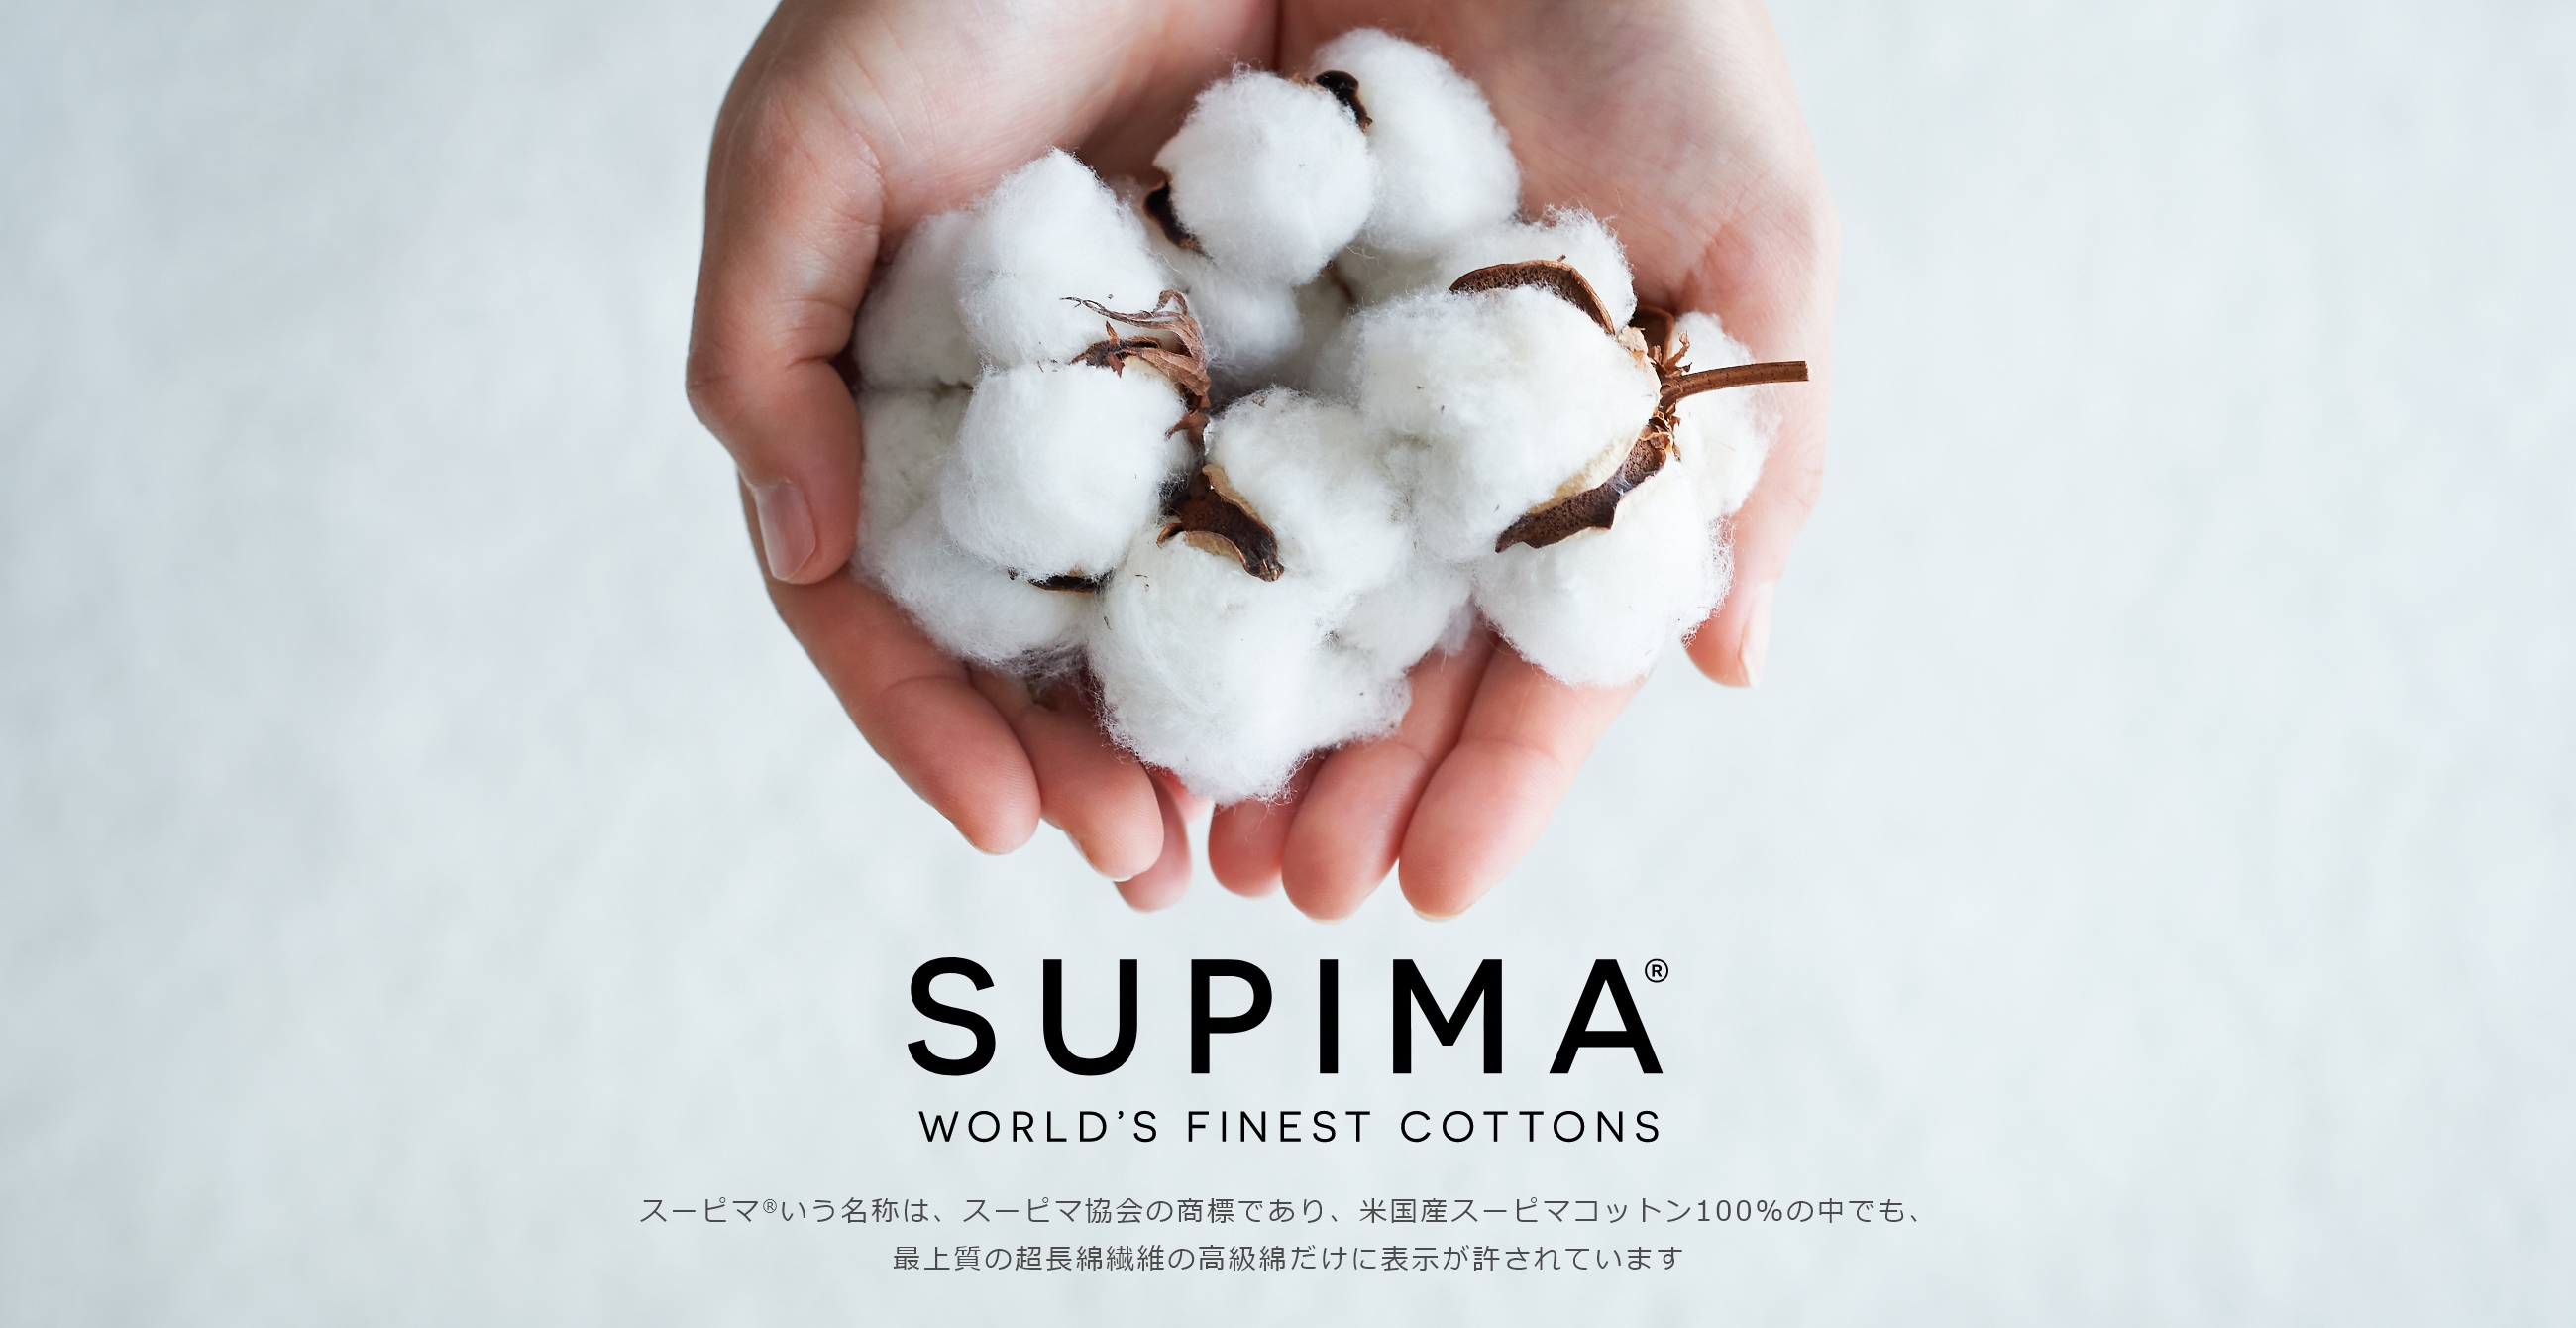 SUPIMA(R) WORLD'S FINEST COTTONS/スーピマ®いう名称は、スーピマ協会の商標であり、米国産スーピマコットン100%の中でも、最上質の超長綿繊維の高級綿だけに表示が許されています